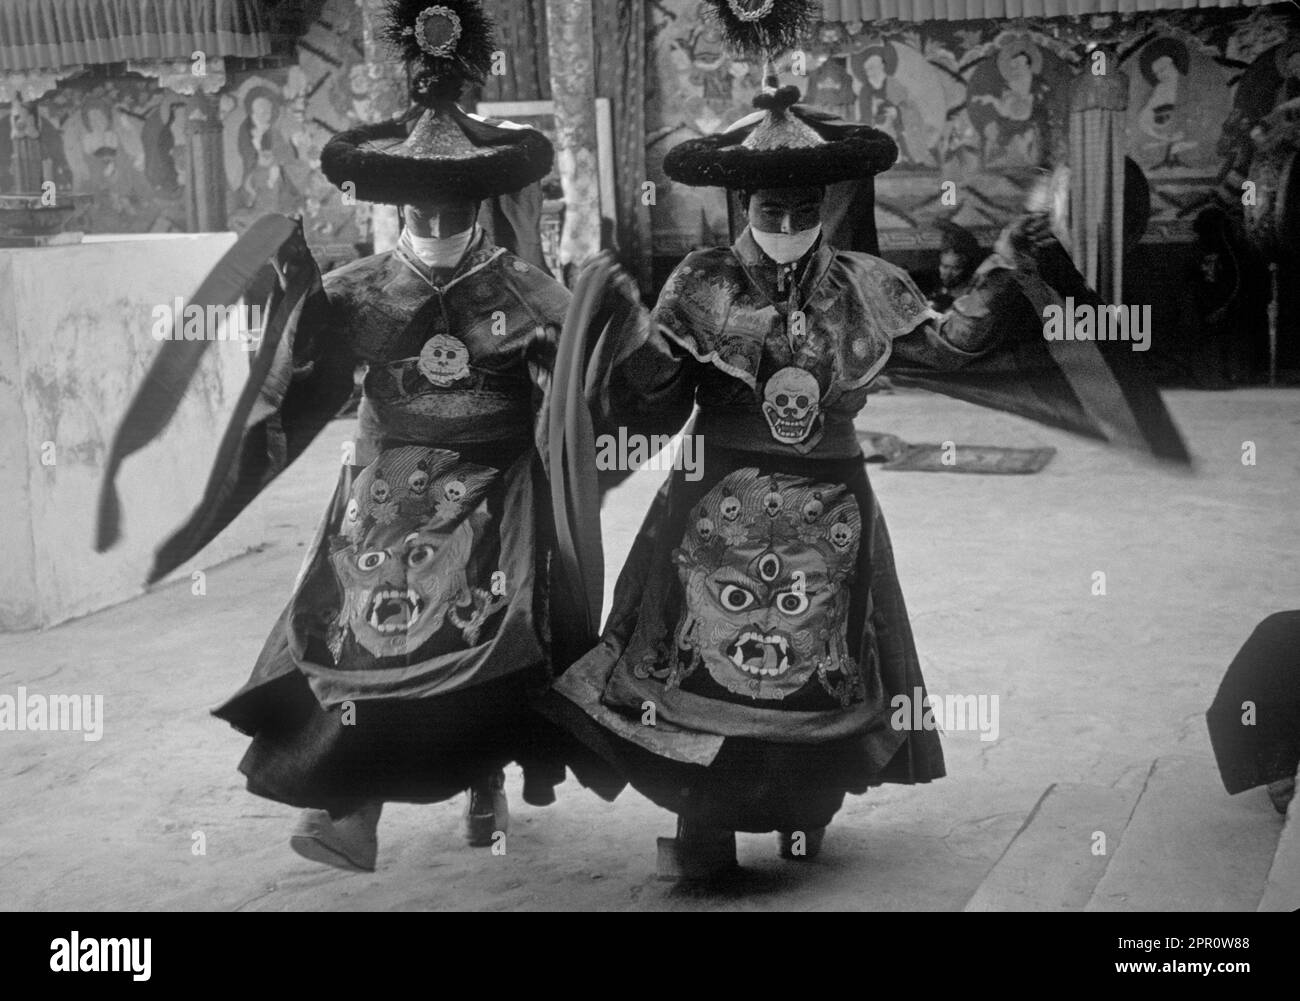 BAILARINES TÁNTRICOS en trajes de seda, con bufanda para evitar la inhalación de seres vivos, Danza enmascarada del Monasterio de TIKSE - LADAKH, INDIA Foto de stock